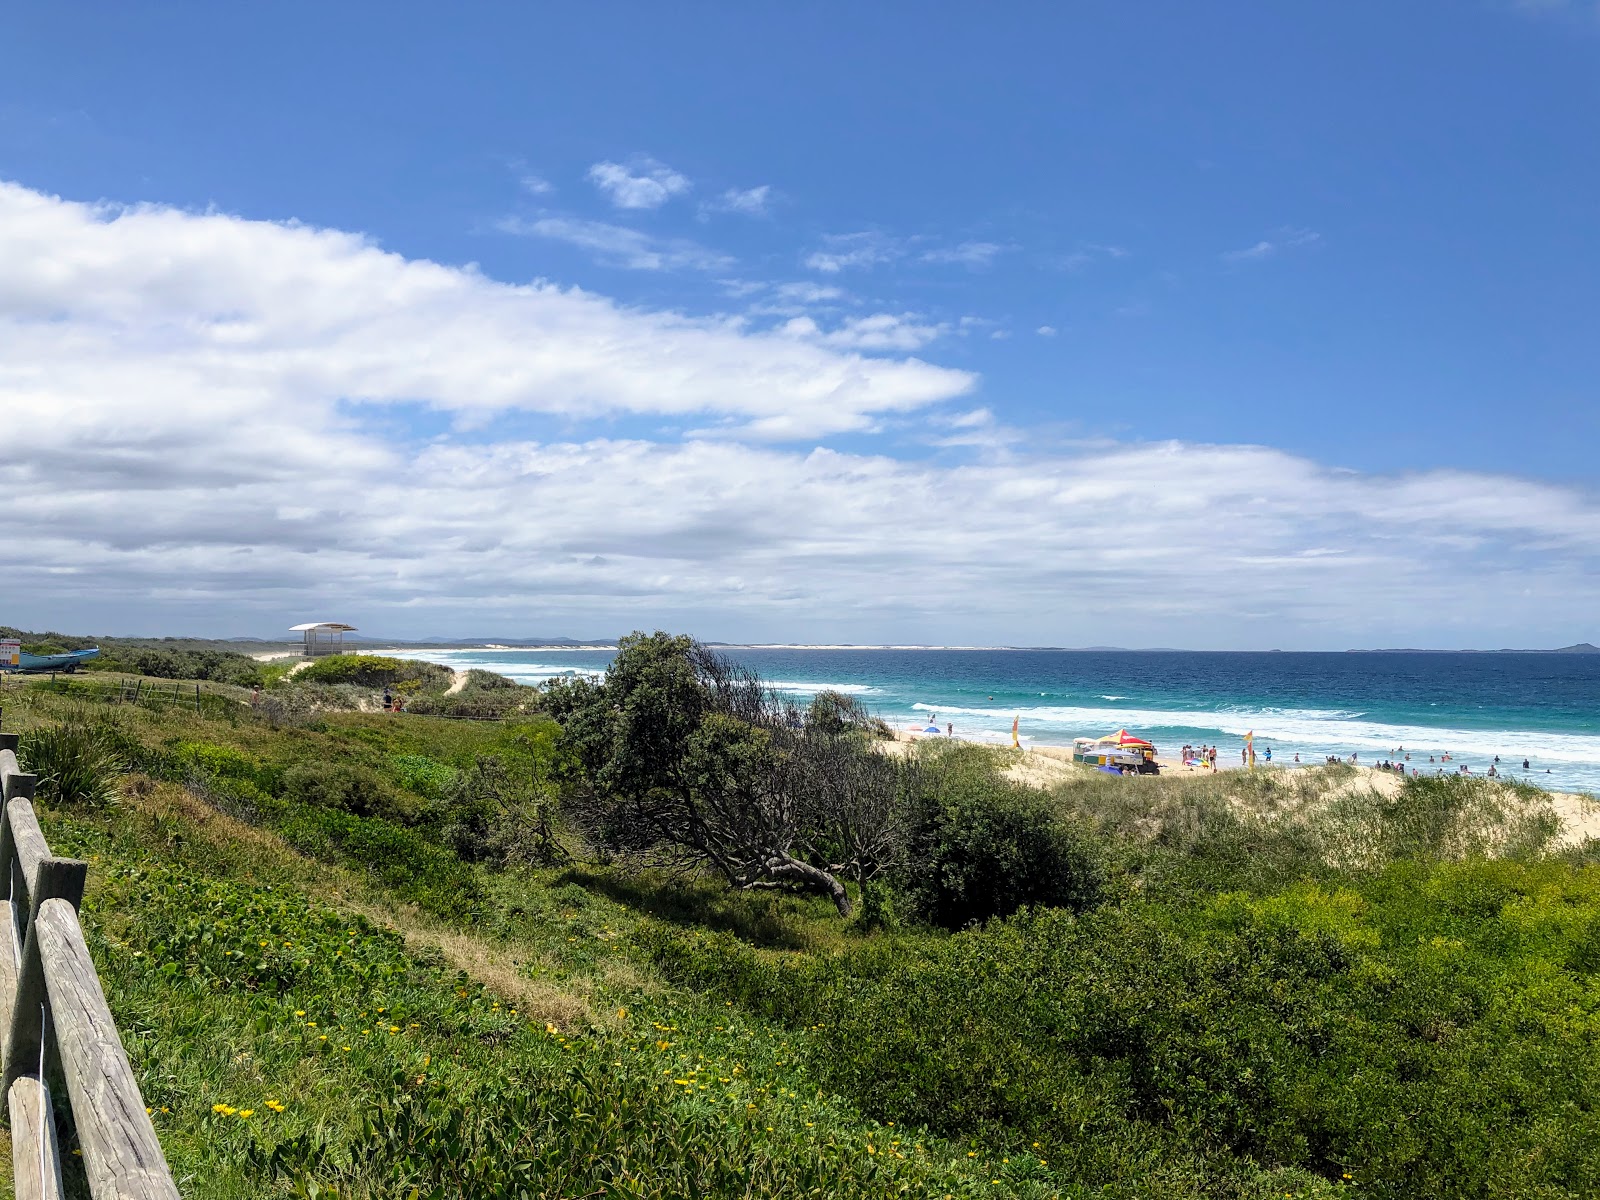 Foto de Wanderrabah Beach ubicado en área natural